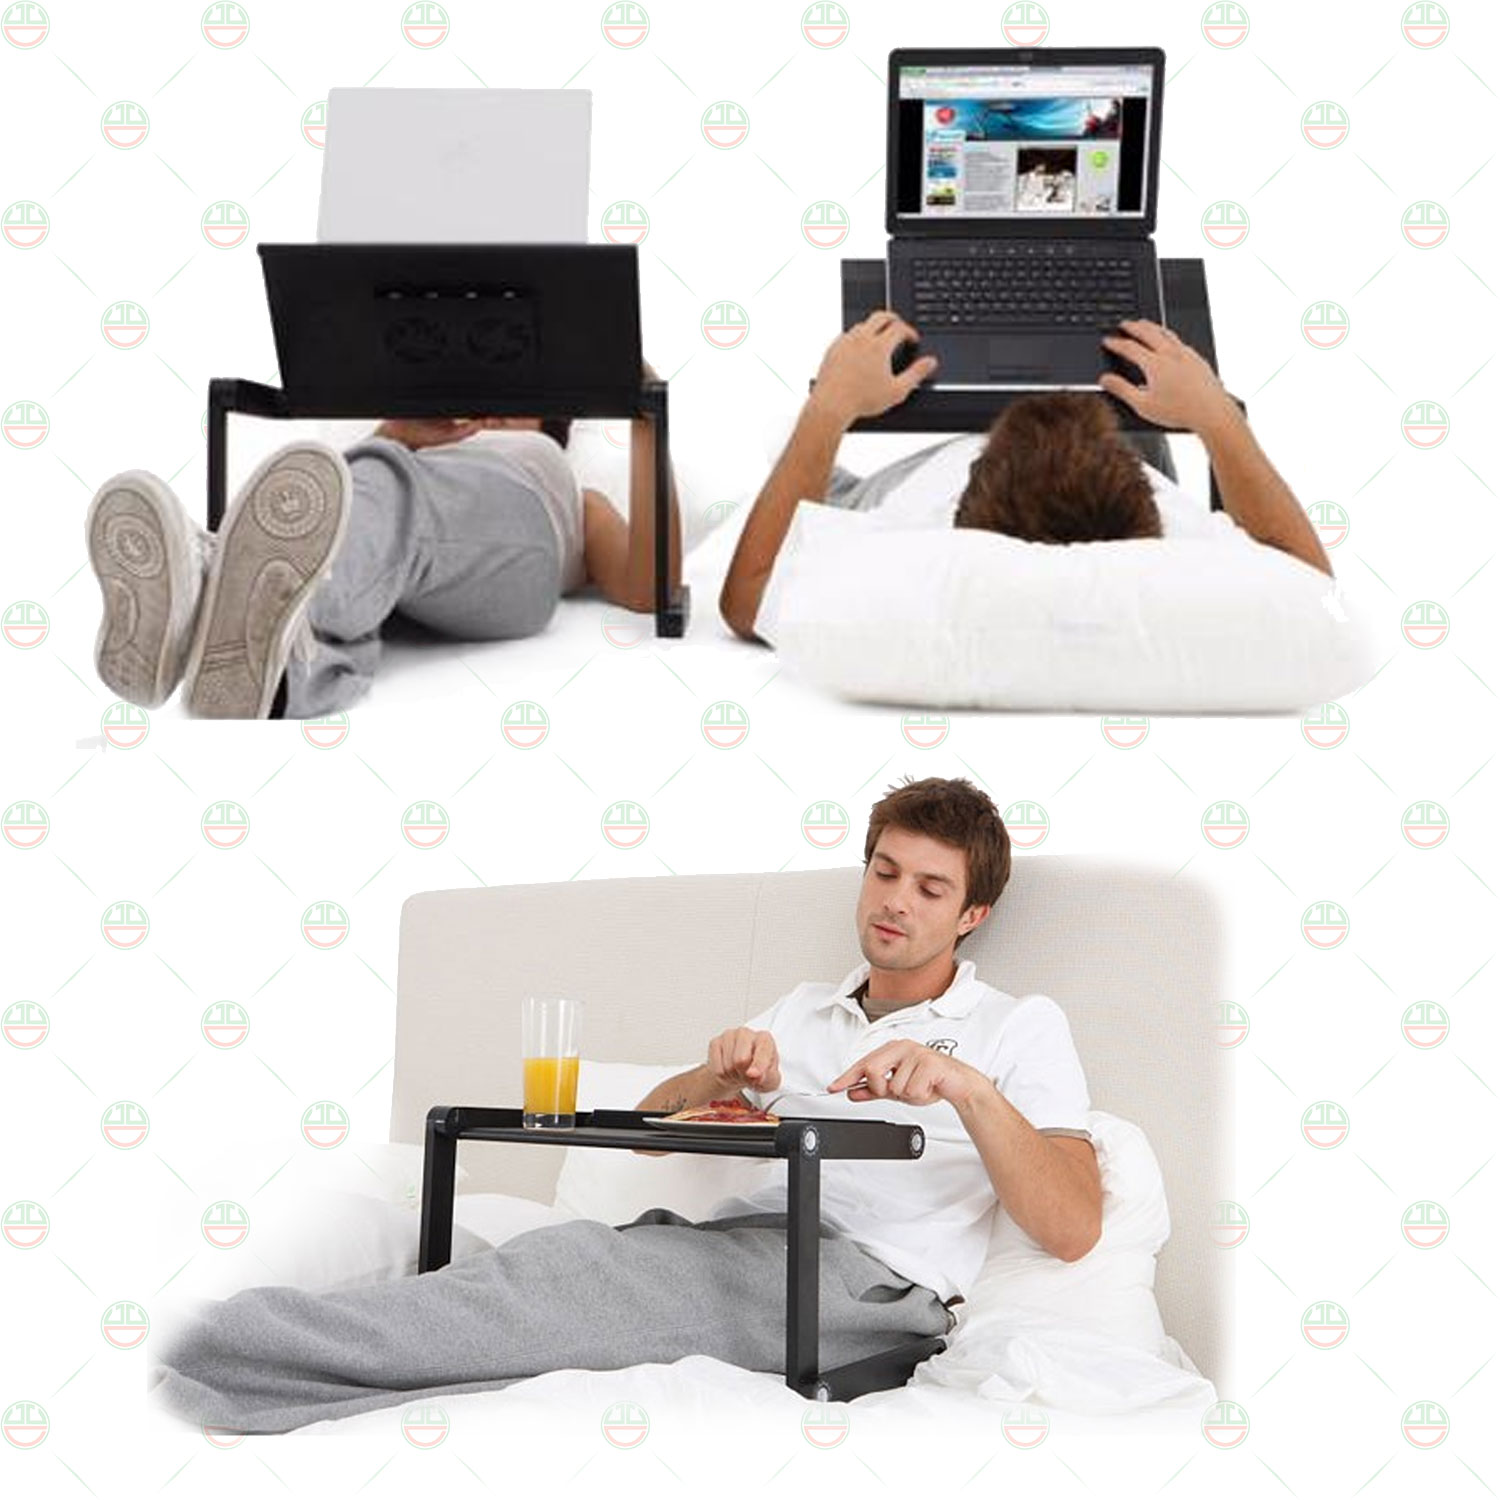 [Độc Đáo] Bàn Laptop Gấp Gọn - Bàn Ăn Bệnh Nhân KhoNCC Hàng Chính Hãng - Thoải Mái Tiện Dụng Sử Dụng Kể Cả Khi Ngồi, Nằm - KDHS-BLTGG-DE (Đen)